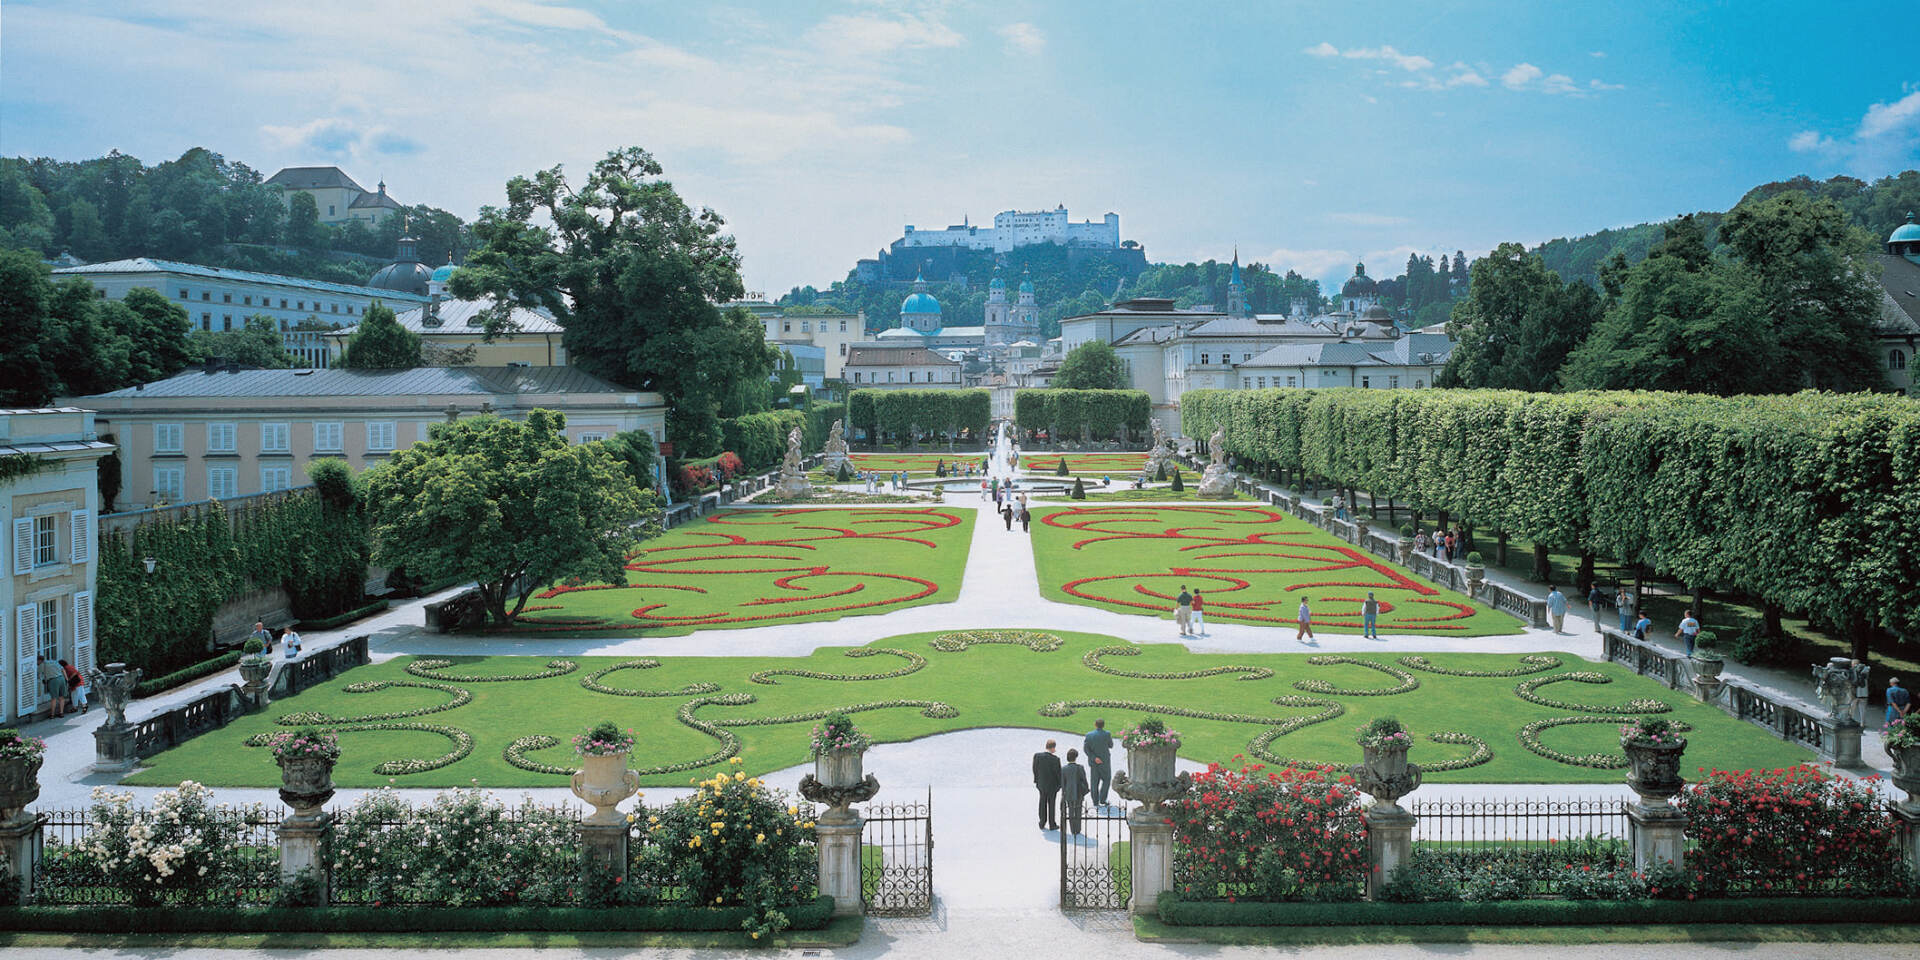 View over Mirabell garden © Tourismus Salzburg GmbH